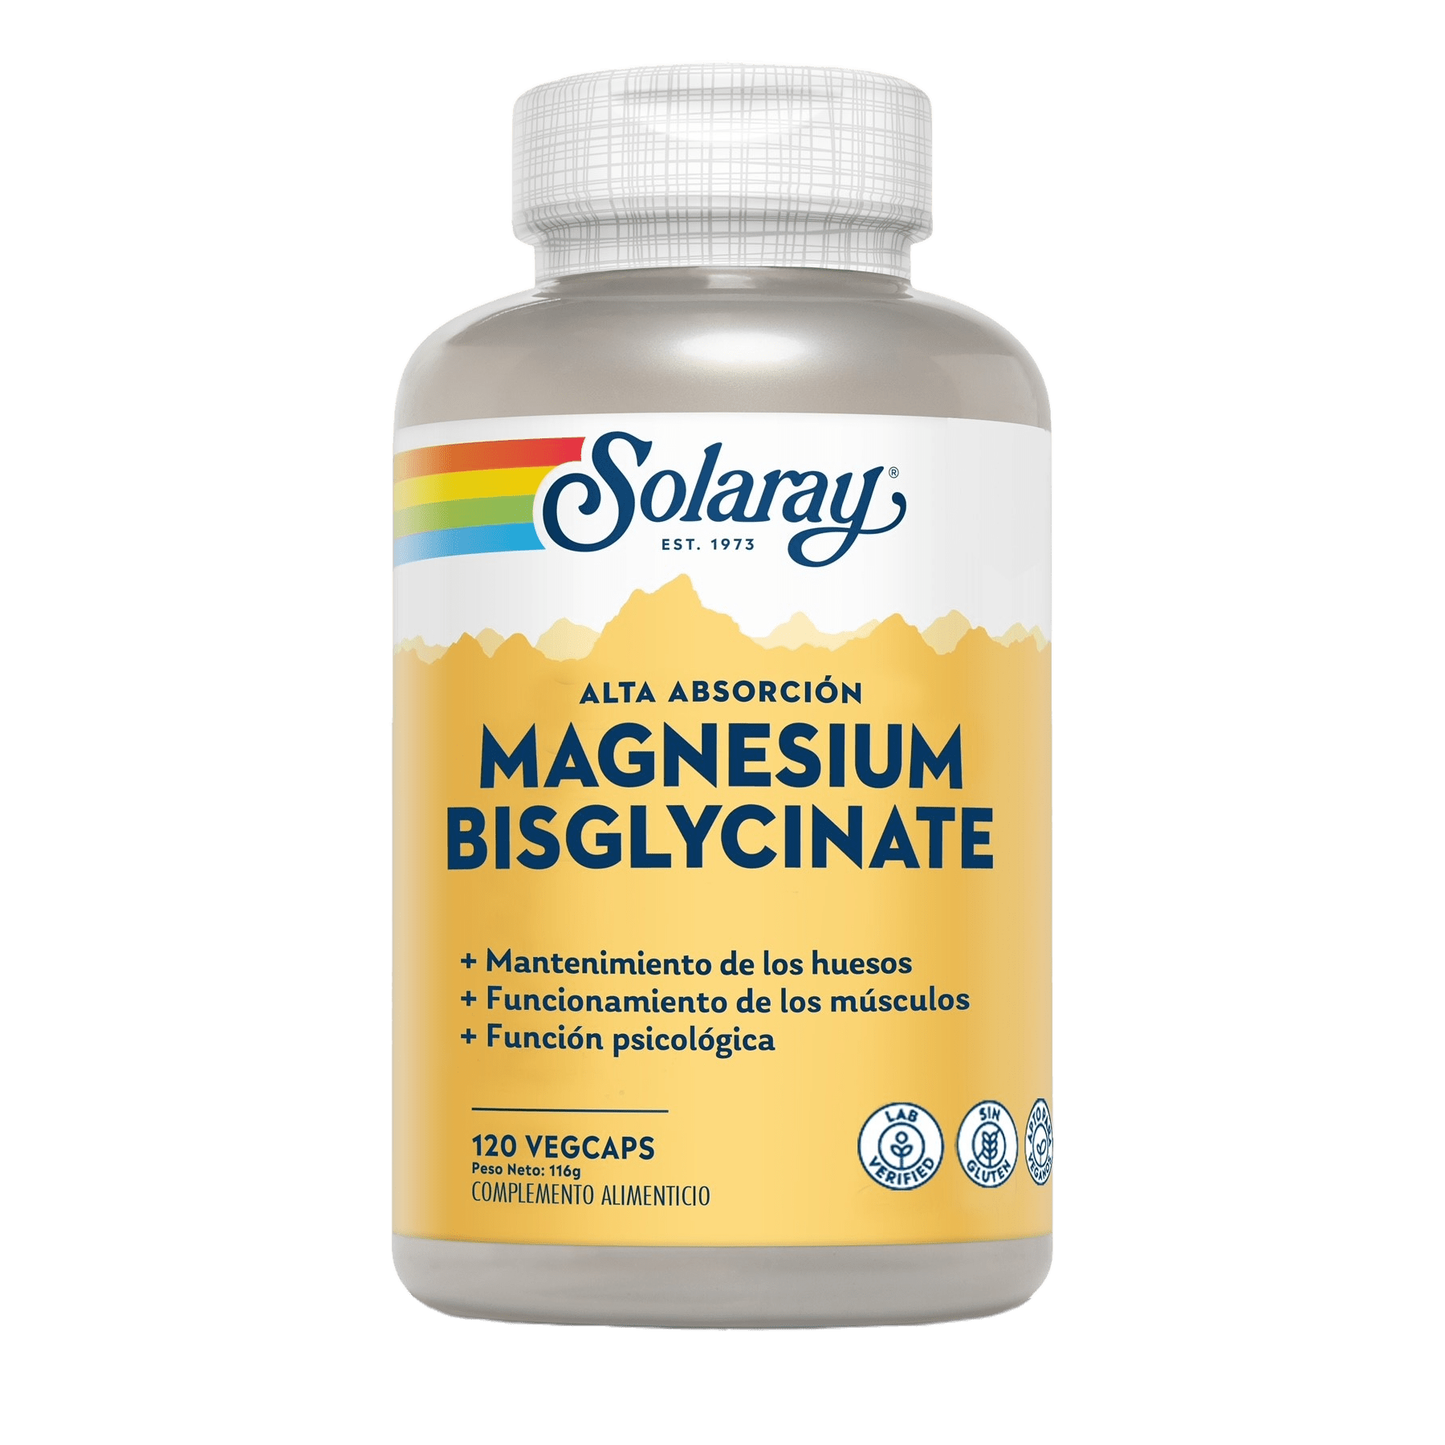 Magnesium Bisglycinate 120 Comprimidos | Solaray - Dietetica Ferrer